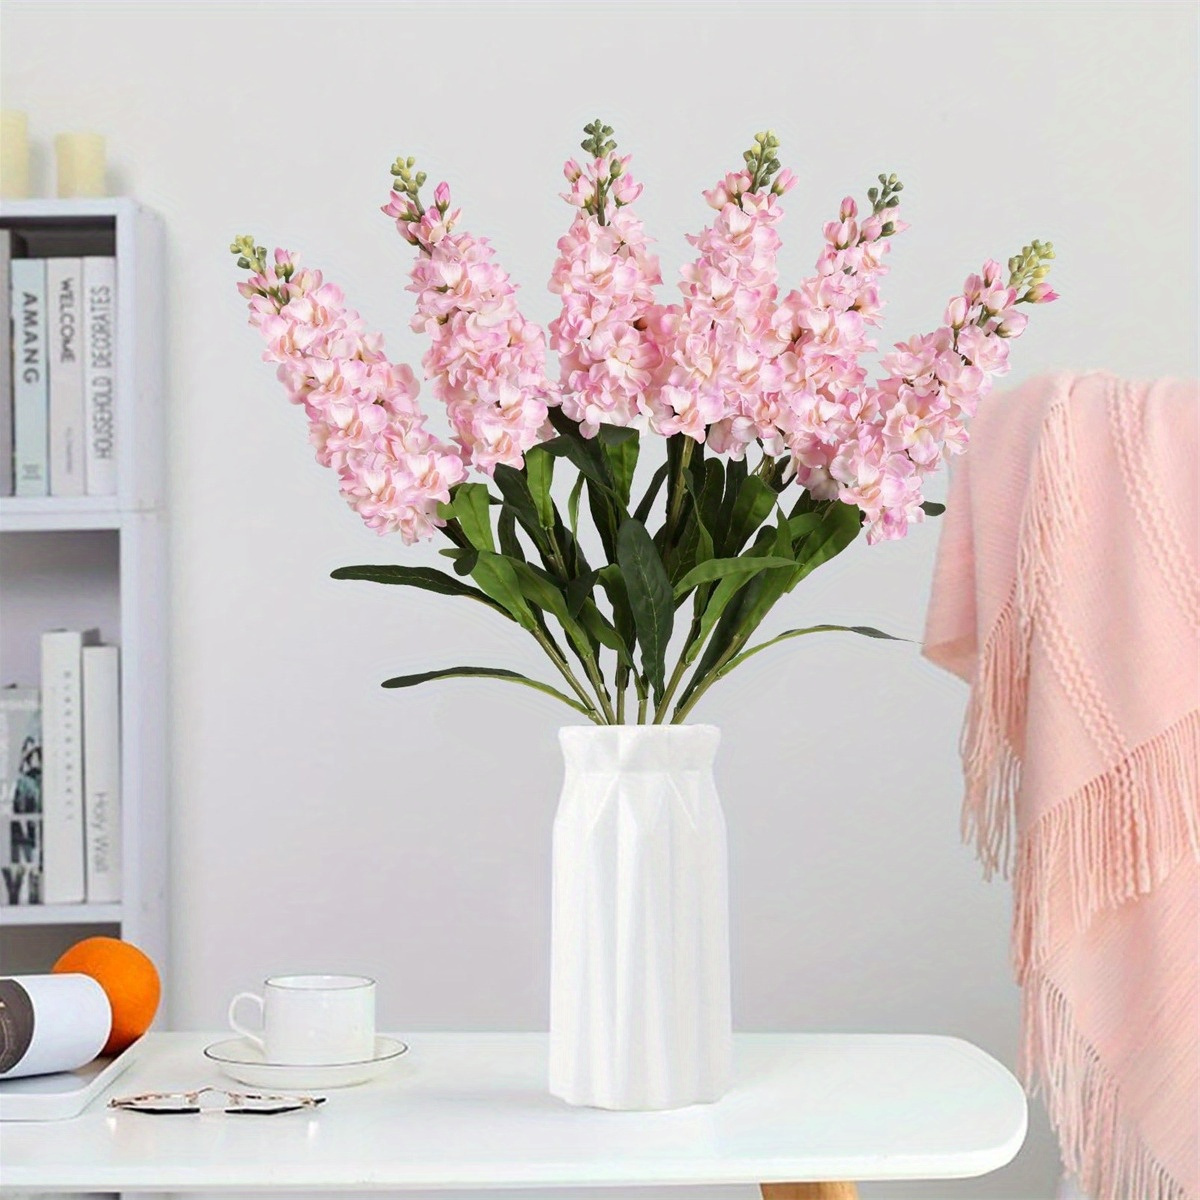 

6pcs Silk Snapdragon Artificial Flowers, Antirrhinum Fake Flowers 31.50'' Long Stem Faux Flowers Floral Arrangement Flowers For Tall Vase Home Decor Wedding Table Centerpieces